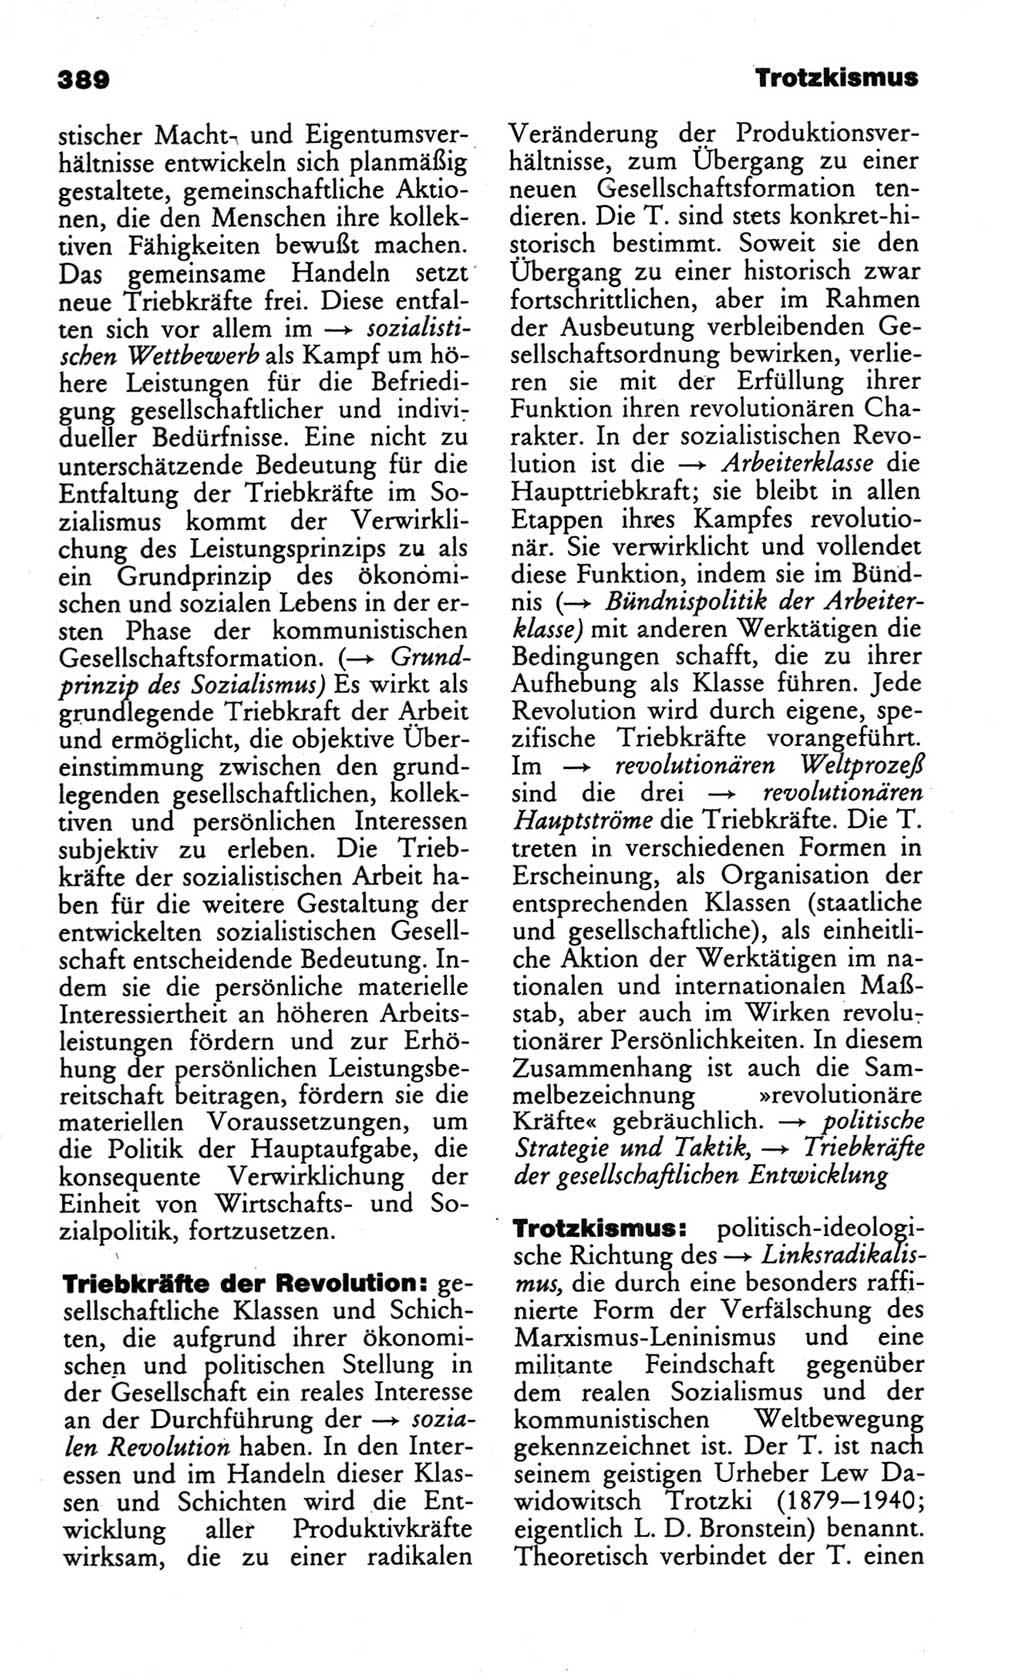 Wörterbuch des wissenschaftlichen Kommunismus [Deutsche Demokratische Republik (DDR)] 1984, Seite 389 (Wb. wiss. Komm. DDR 1984, S. 389)